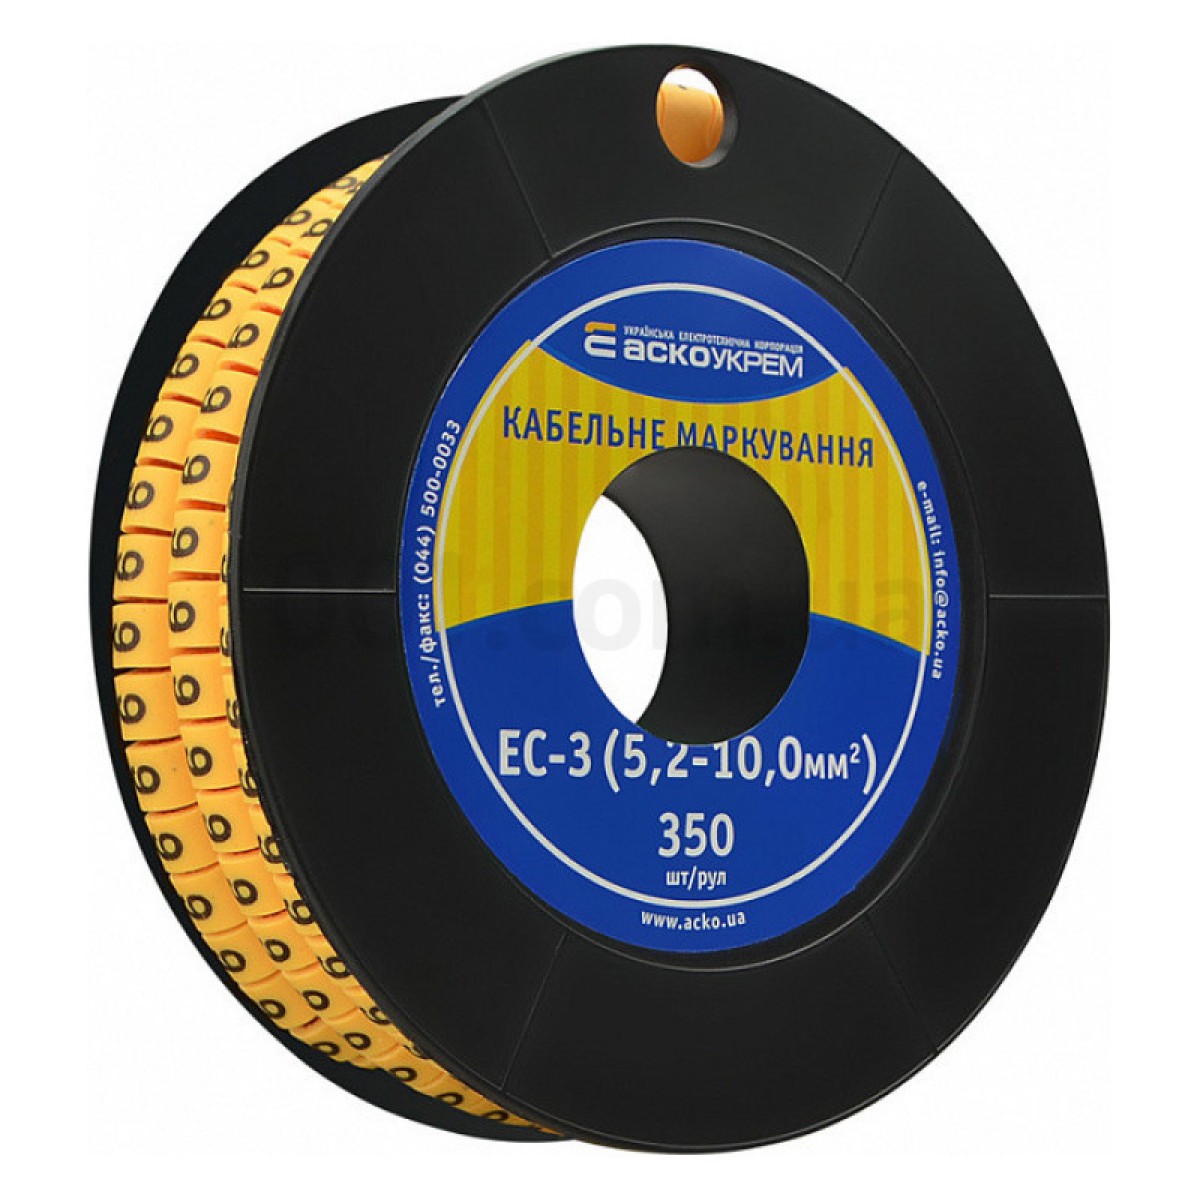 Маркування ЕС-3 для кабелю 5,2-10,0 мм² символ «6» (рулон 250 шт.), АСКО-УКРЕМ 256_256.jpg